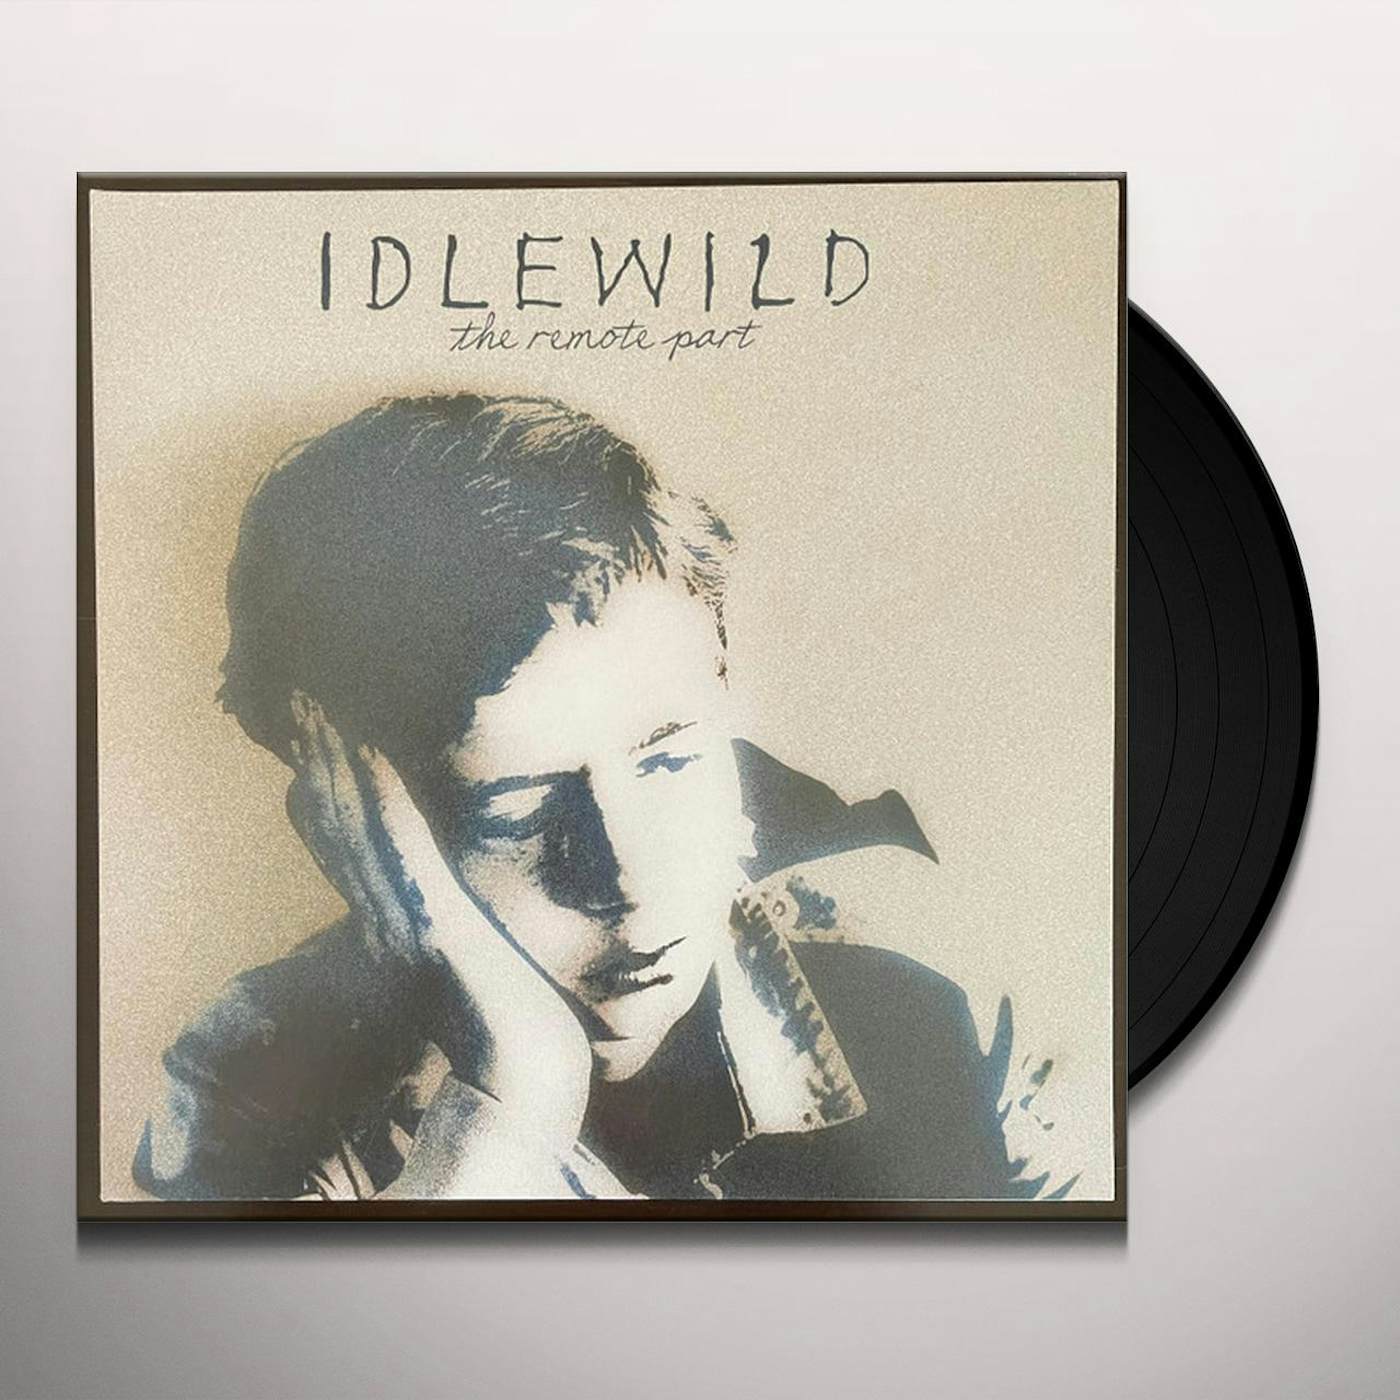 Idlewild REMOTE PART Vinyl Record